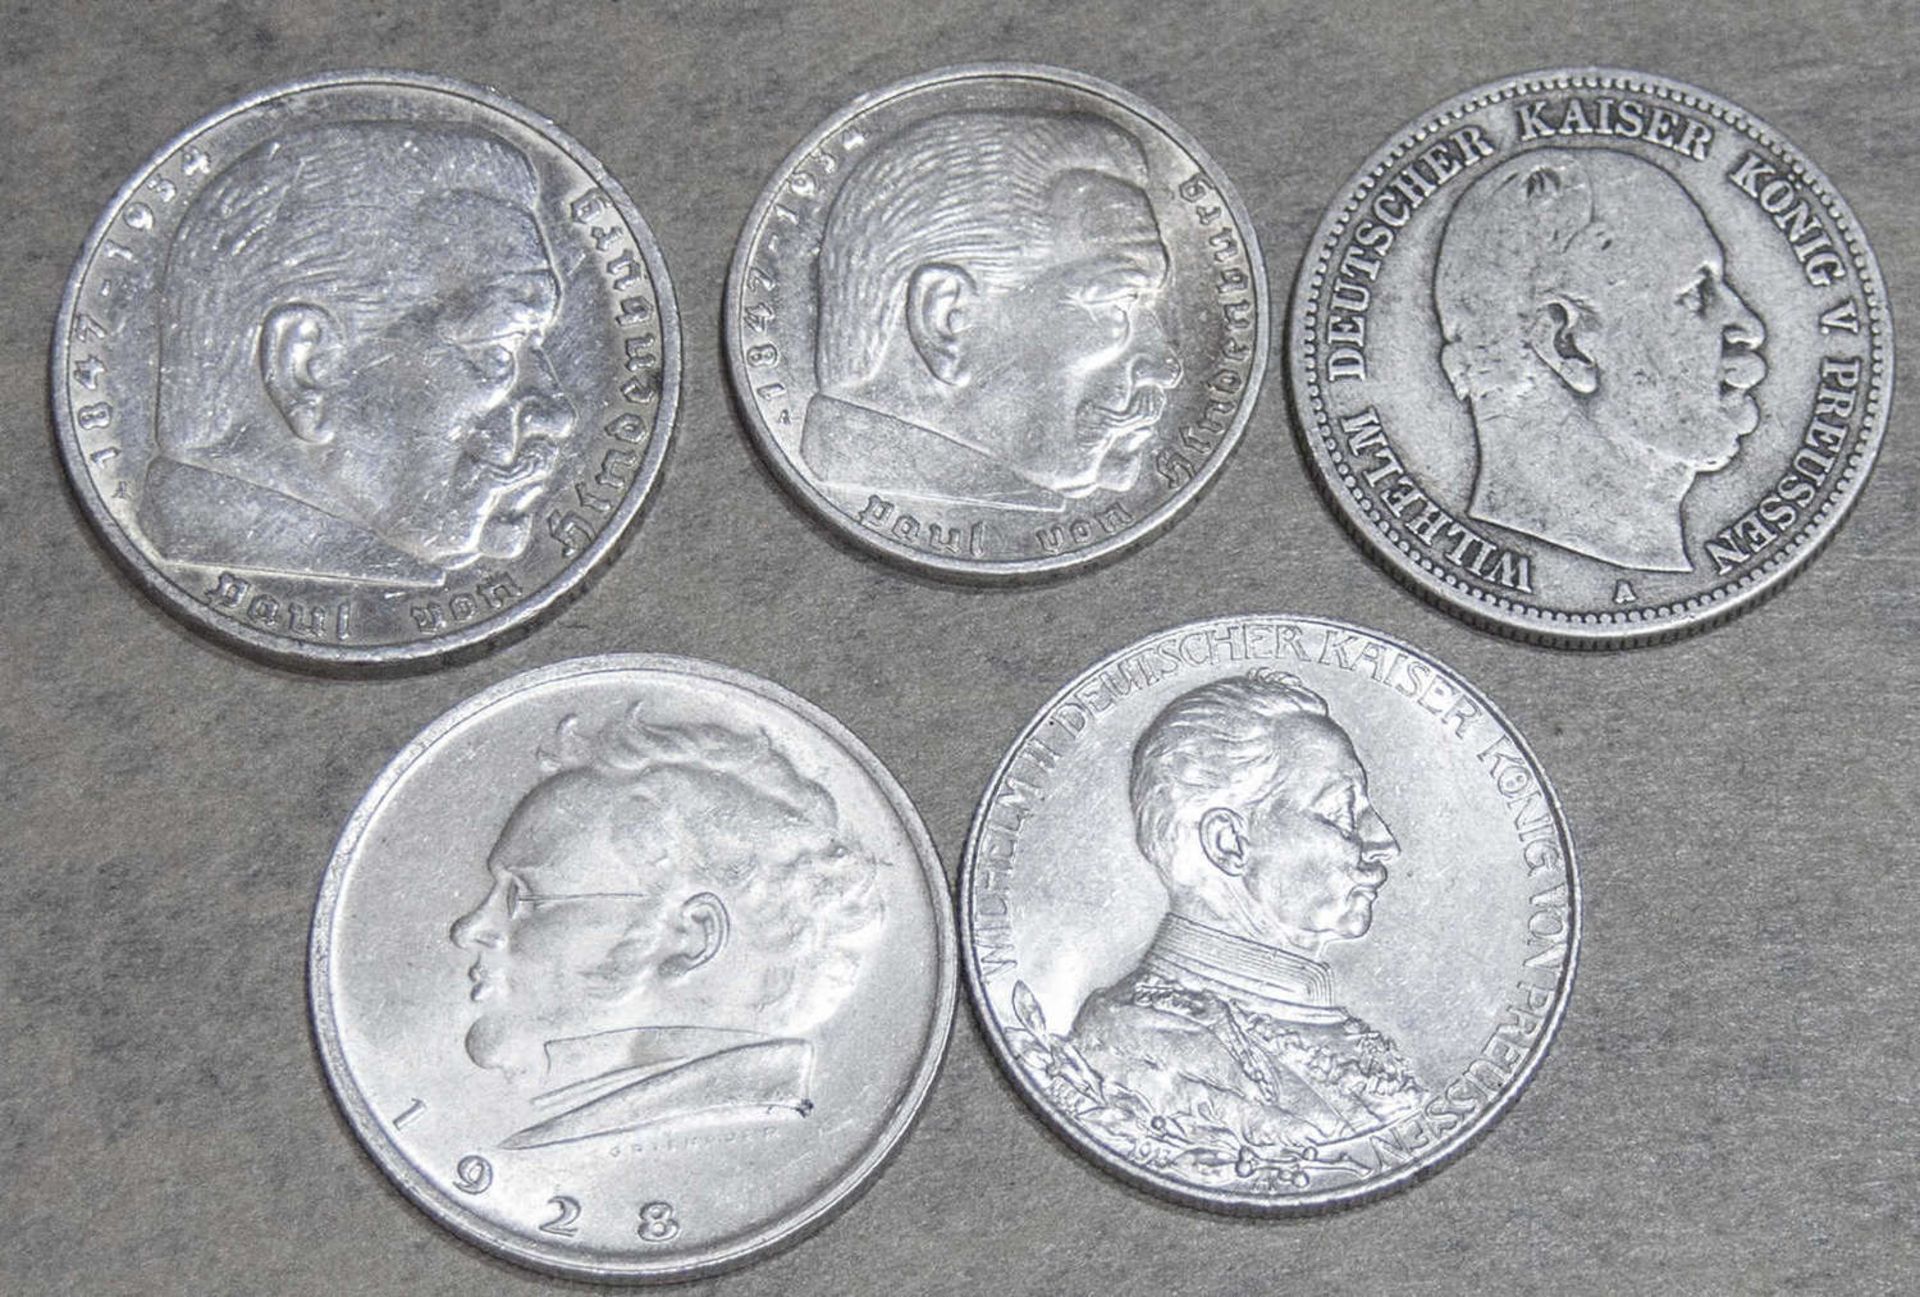 Lot Silbermünzen, bestehend aus: Deutschland 1937 5 Mark "Hindenburg", Deutschland 1876 2 Mark "